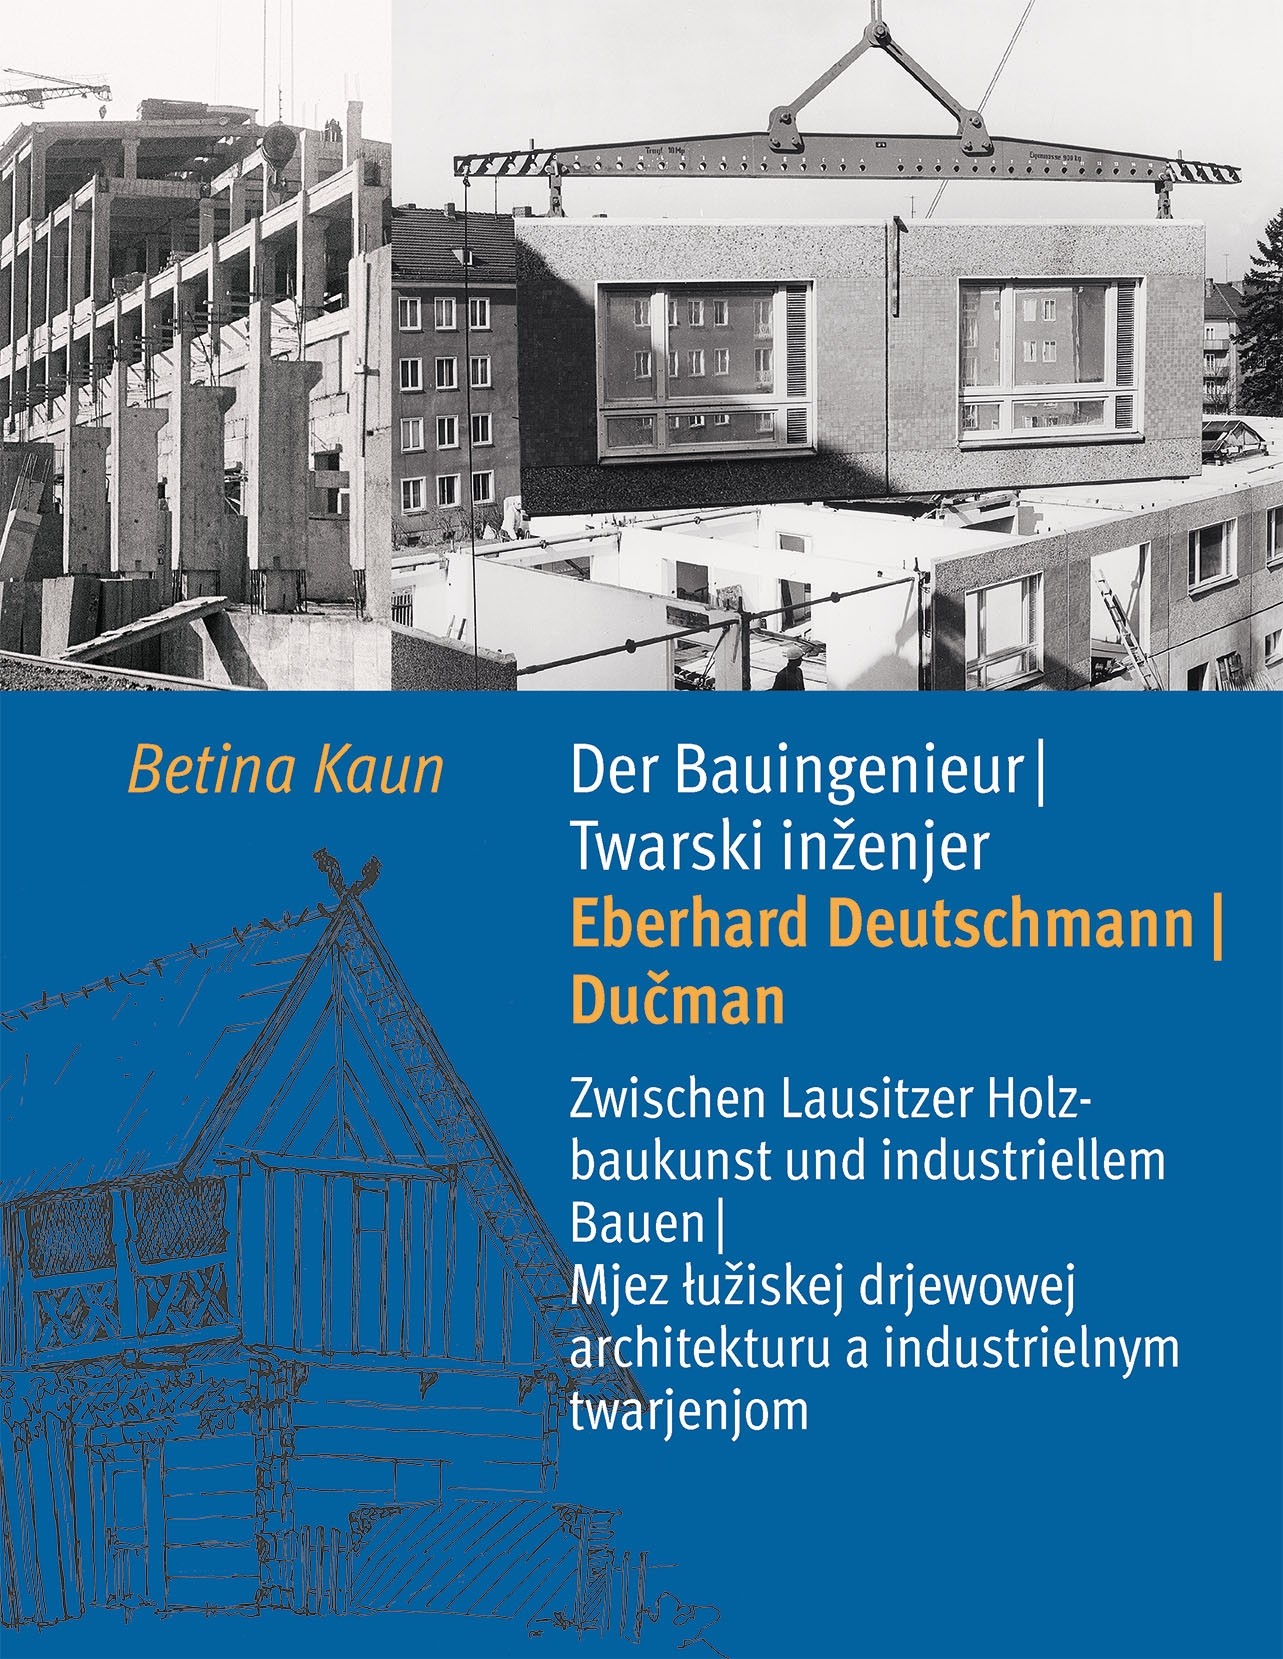 Der Bauingenieur Eberhard Deutschmann/Dučman • Zwischen Holzbaukunst und industriellem Bauen